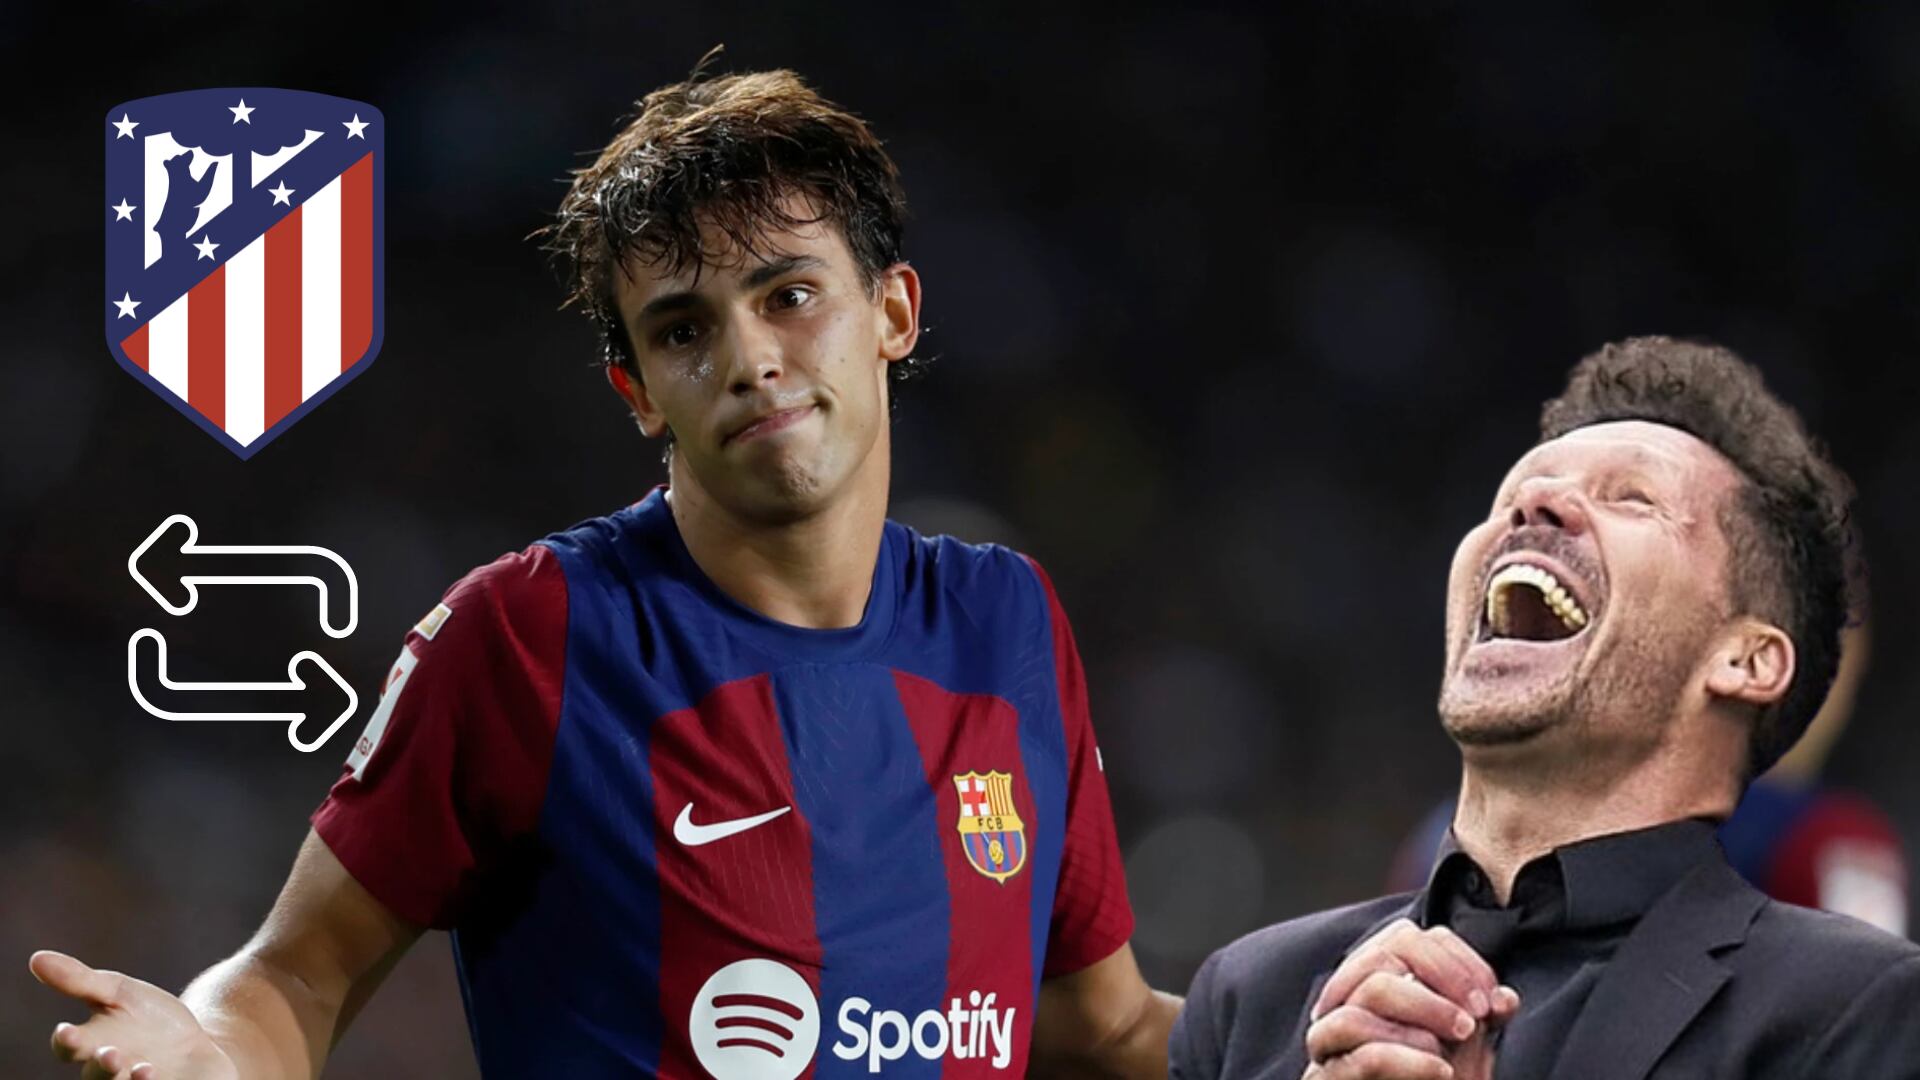 Con tal de tener a Félix, el jugador que Barça ofrece y a Atleti le generó risa